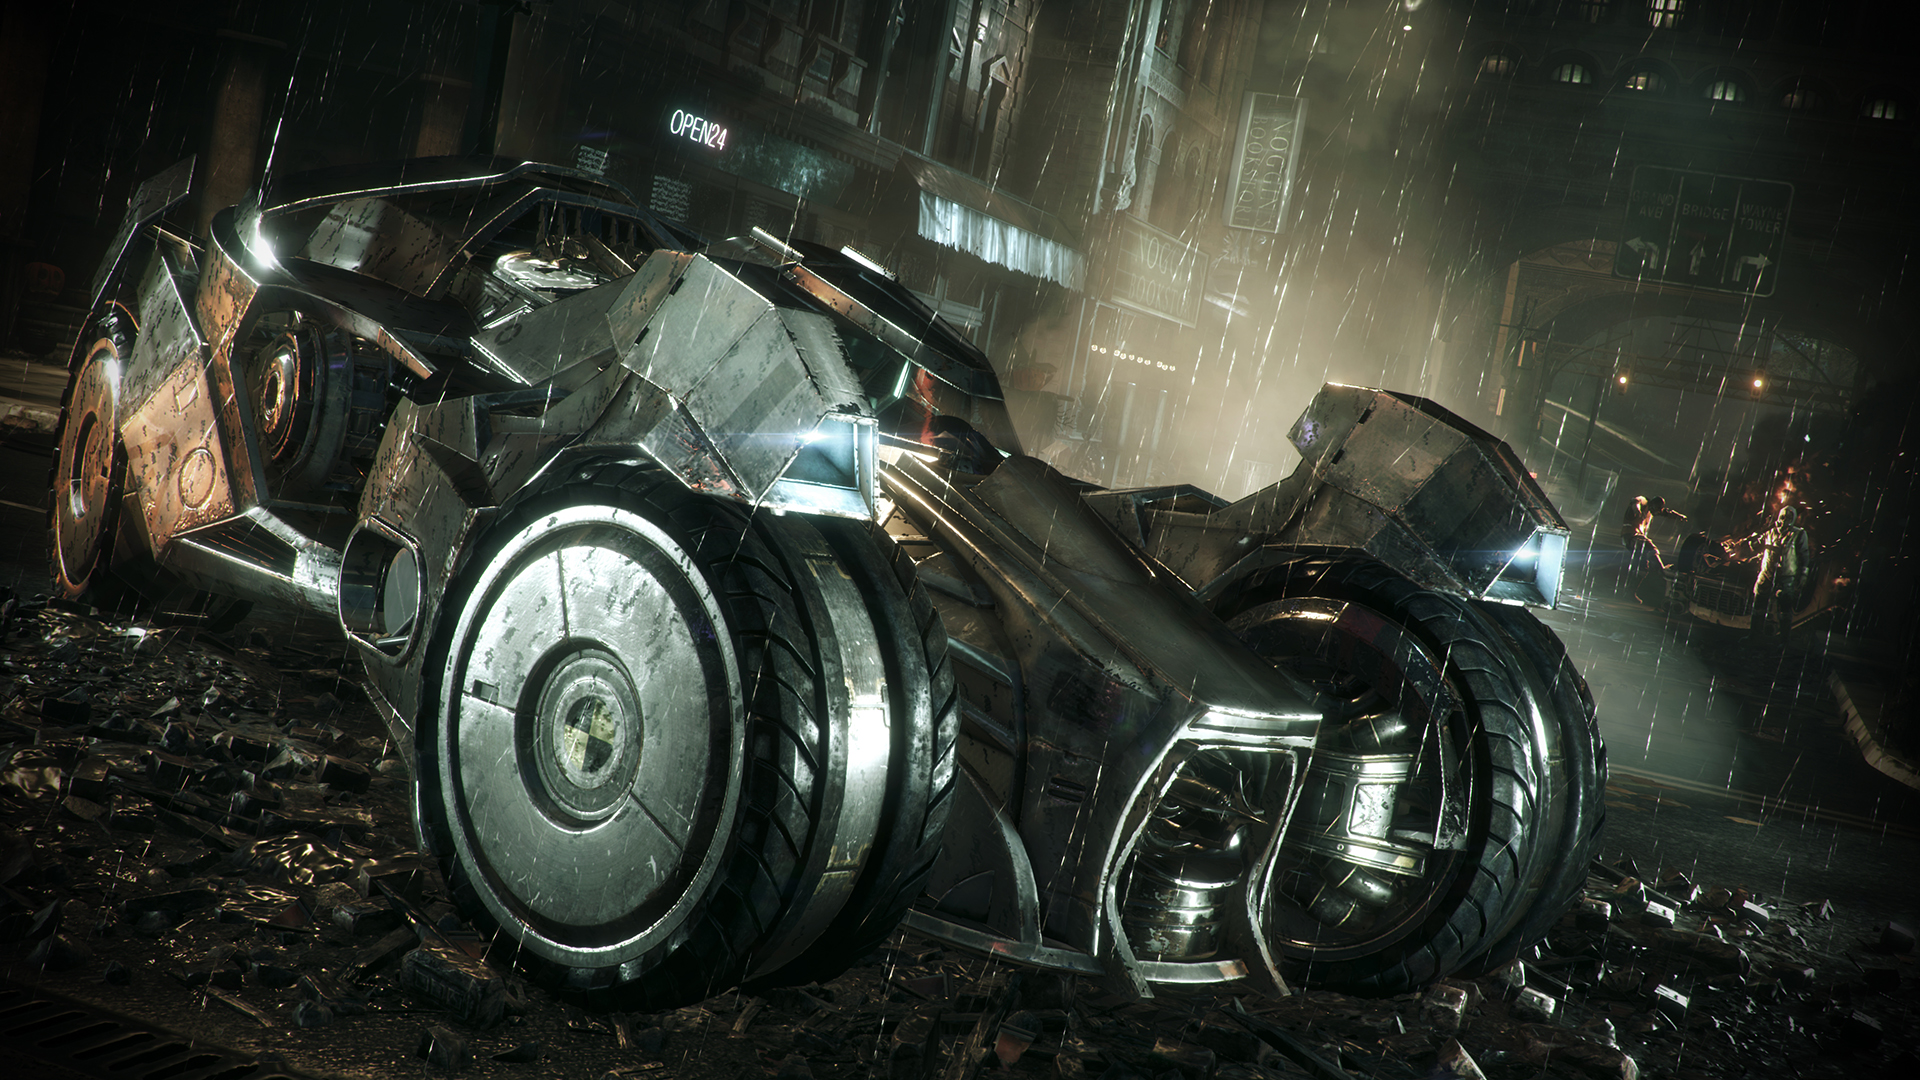 Batman™: Arkham Knight - Prototype Batmobile Skin Featured Screenshot #1